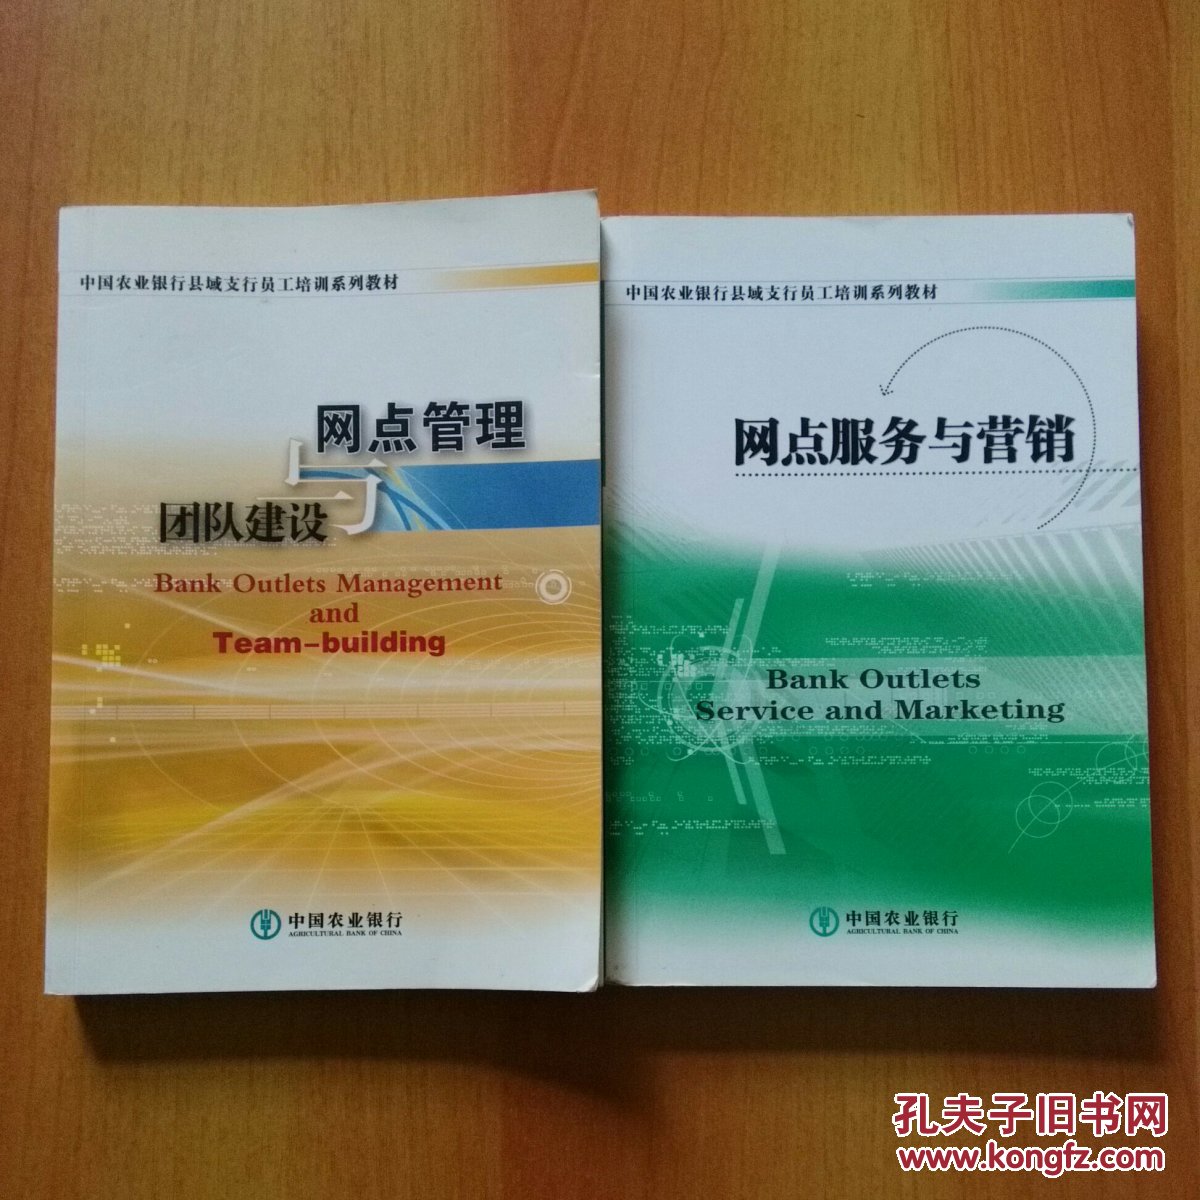 中国农业银行县域支行员工培训系列教材:网点